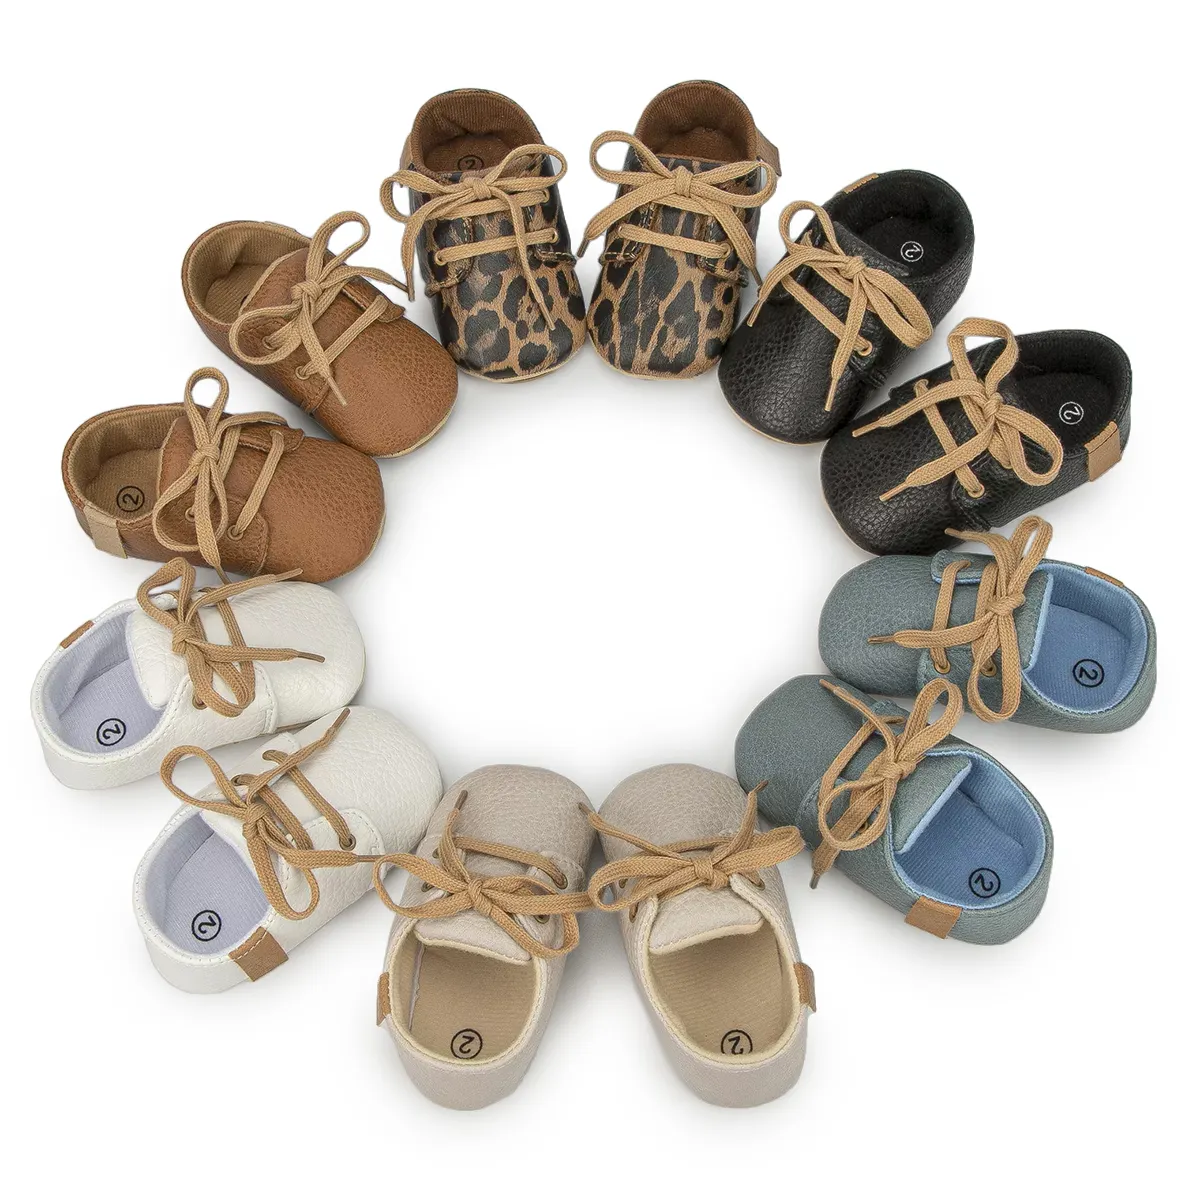 Scarpe mocassini per neonati di alta qualità colorate in pelle sintetica molle antiscivolo suola morbida scarpe elastiche da passeggio per neonati